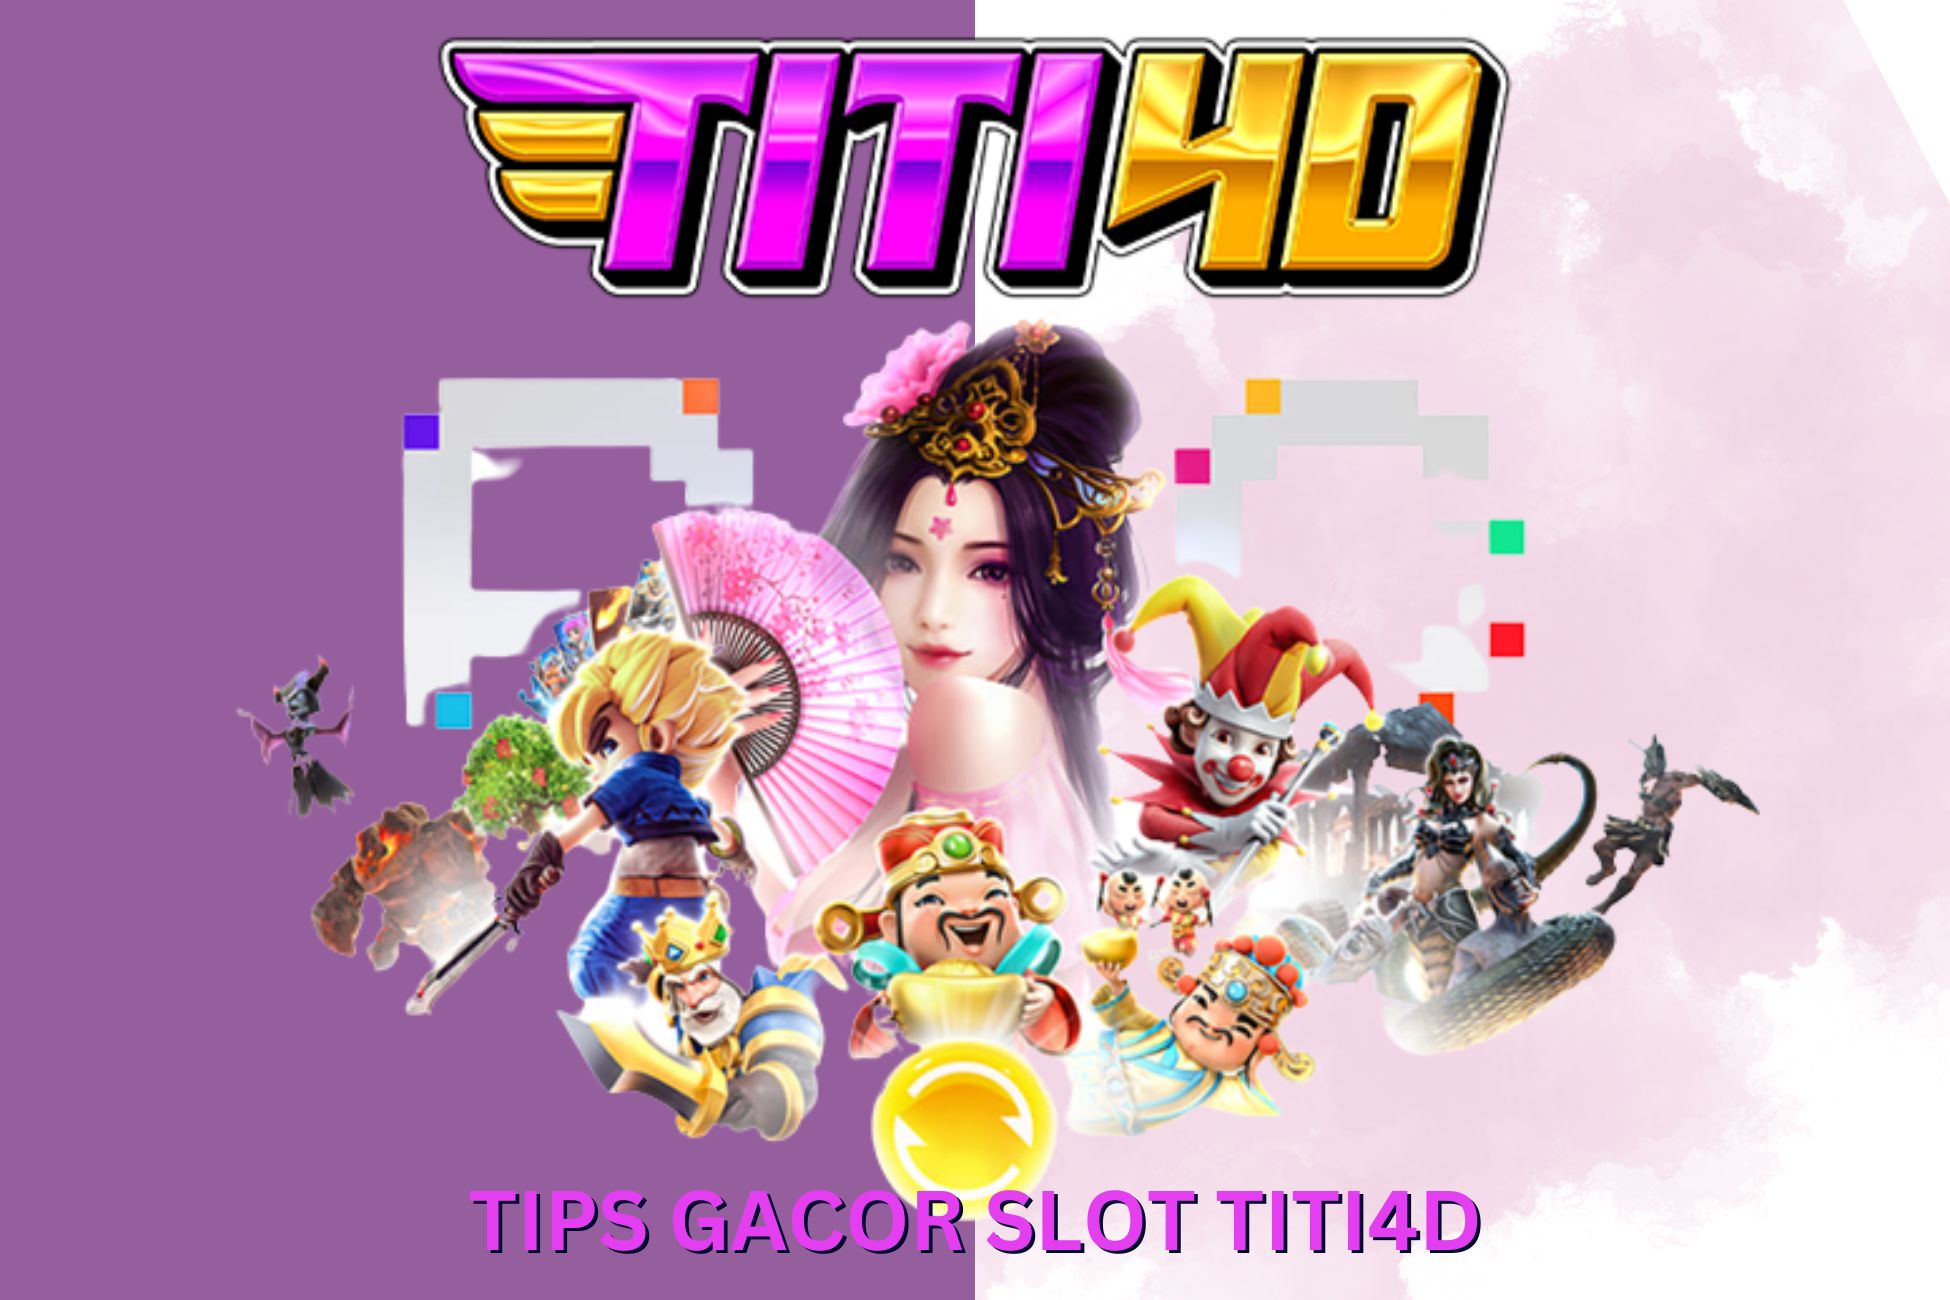 Tips Gacor Slot TITI4D